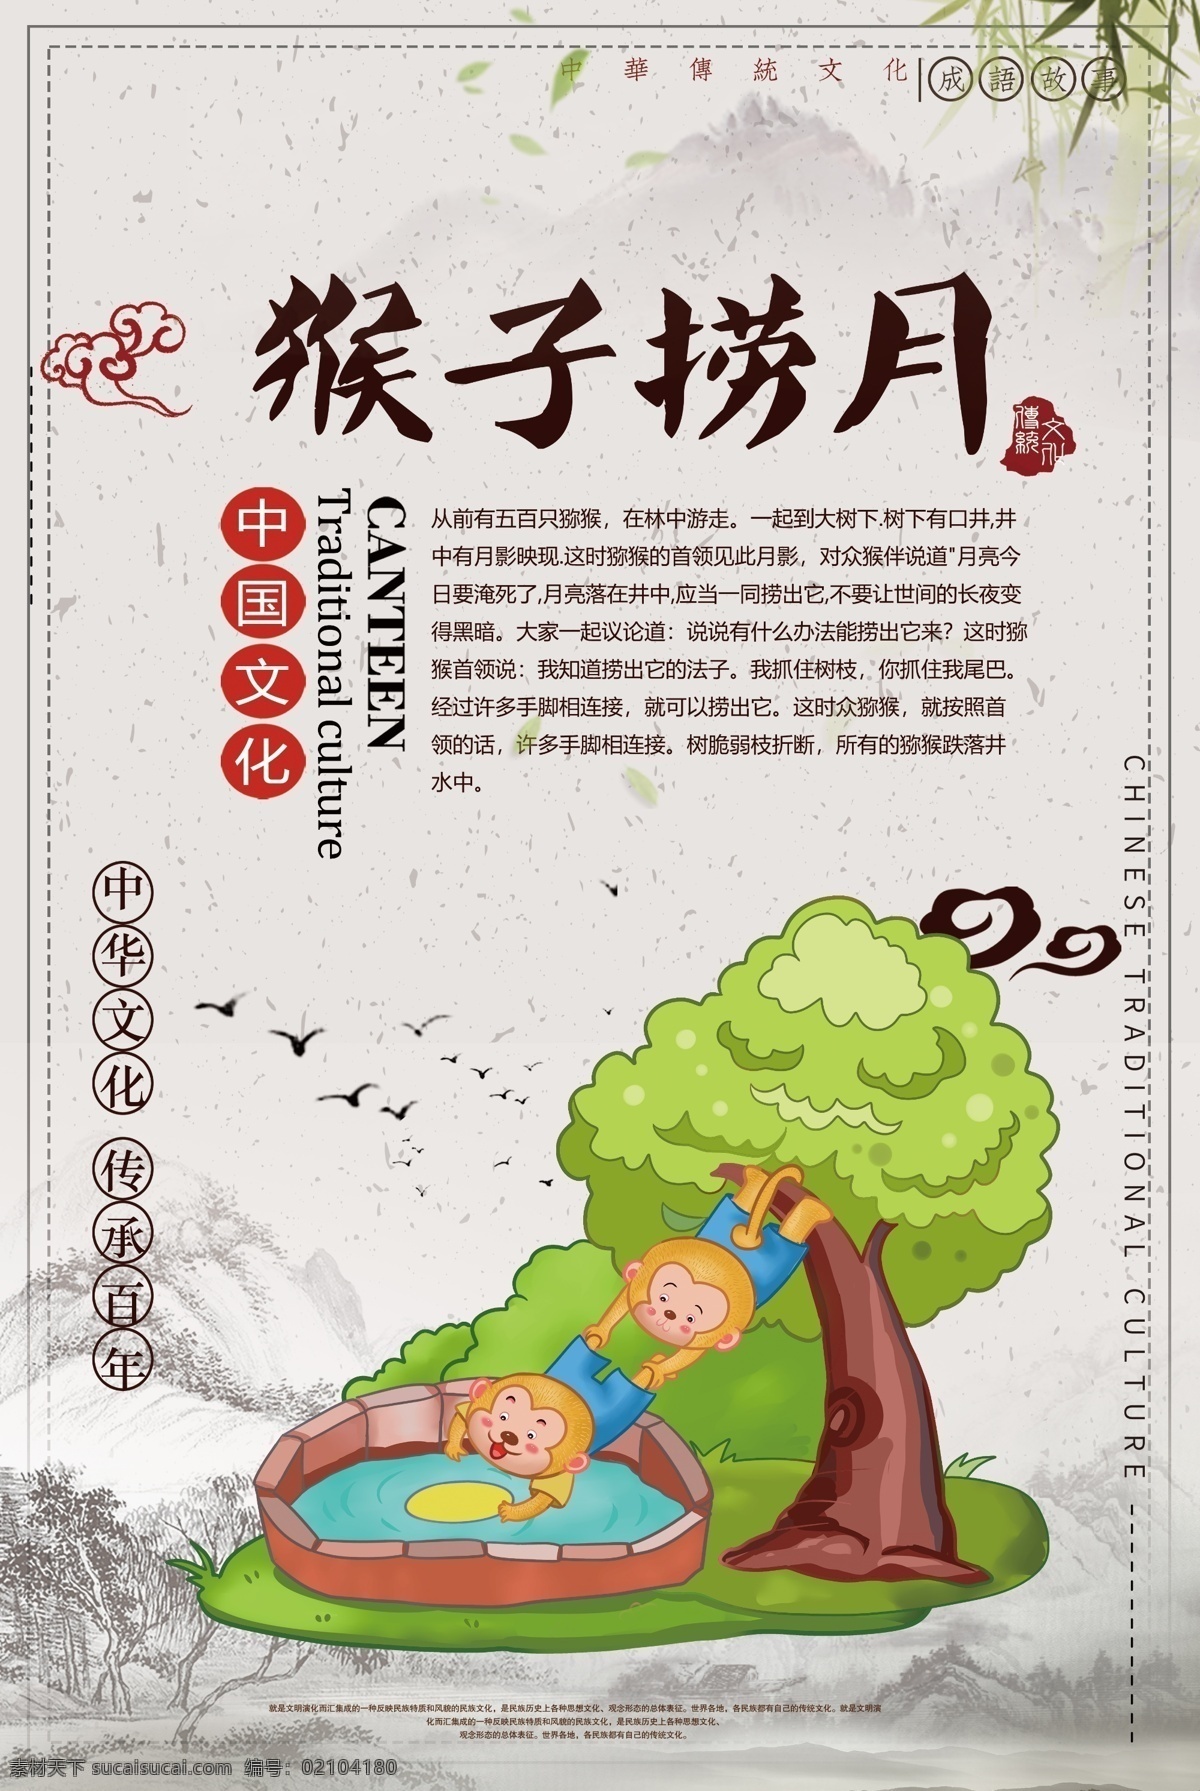 猴子 捞 月 成语 海报 猴子捞月 中华传统 成语故事 中国风 教育 教学 插画 典故 儿童读物 成语海报